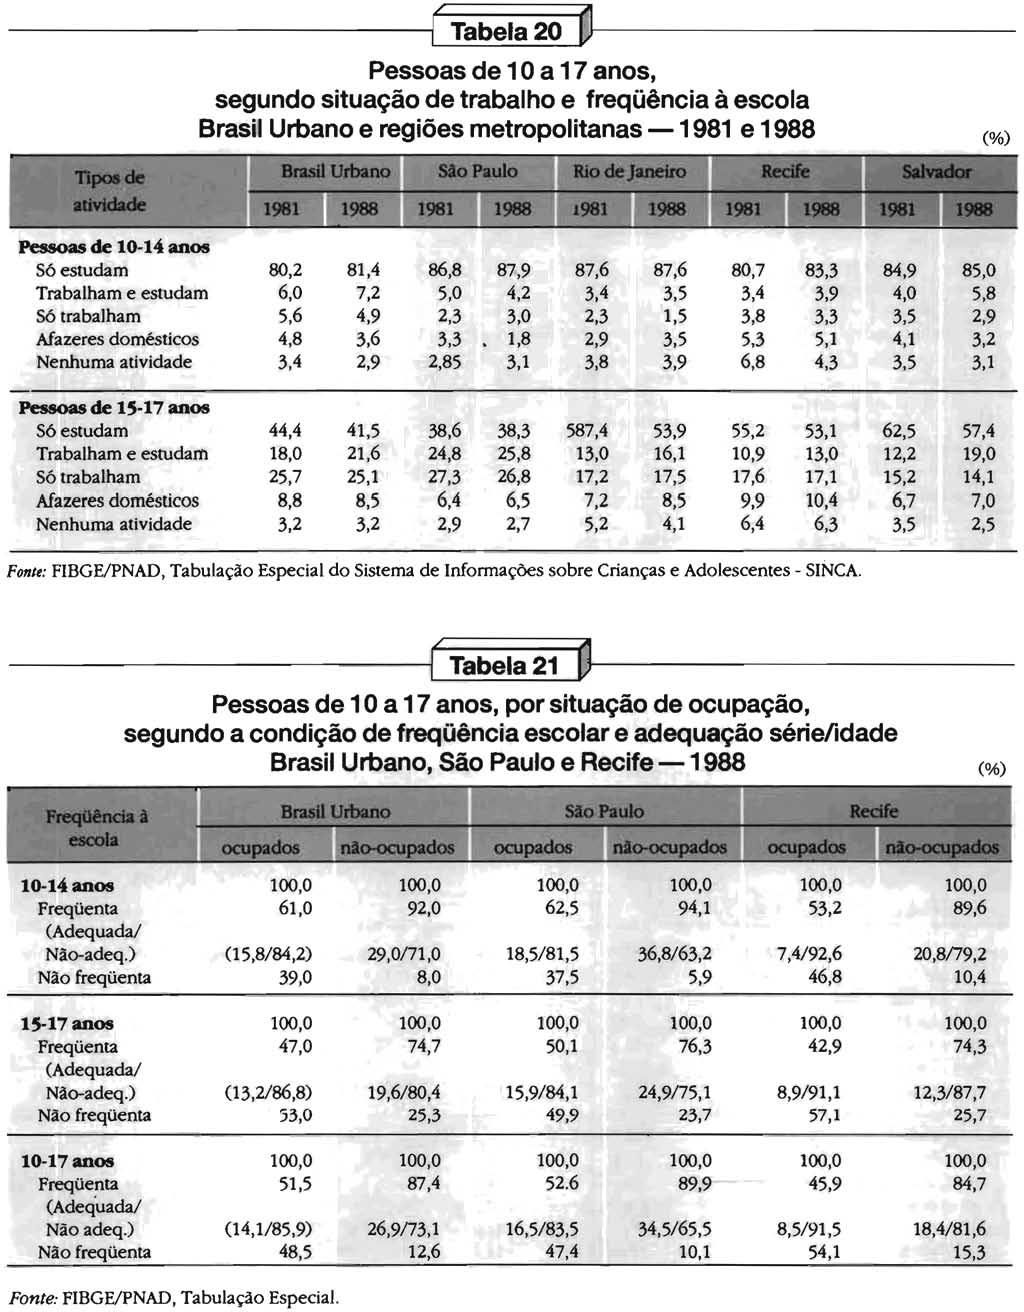 I I Tabela 20 o Pessoas de 10 a 17 anos, segundo situacáo de trabalho e freqüéncla aescola Brasil Urbano e regióes metropolitanas - 1981 e 1988 (%) 1988 Pessoas de 10-14 anos S6estudam 80,2 81,4 86,8